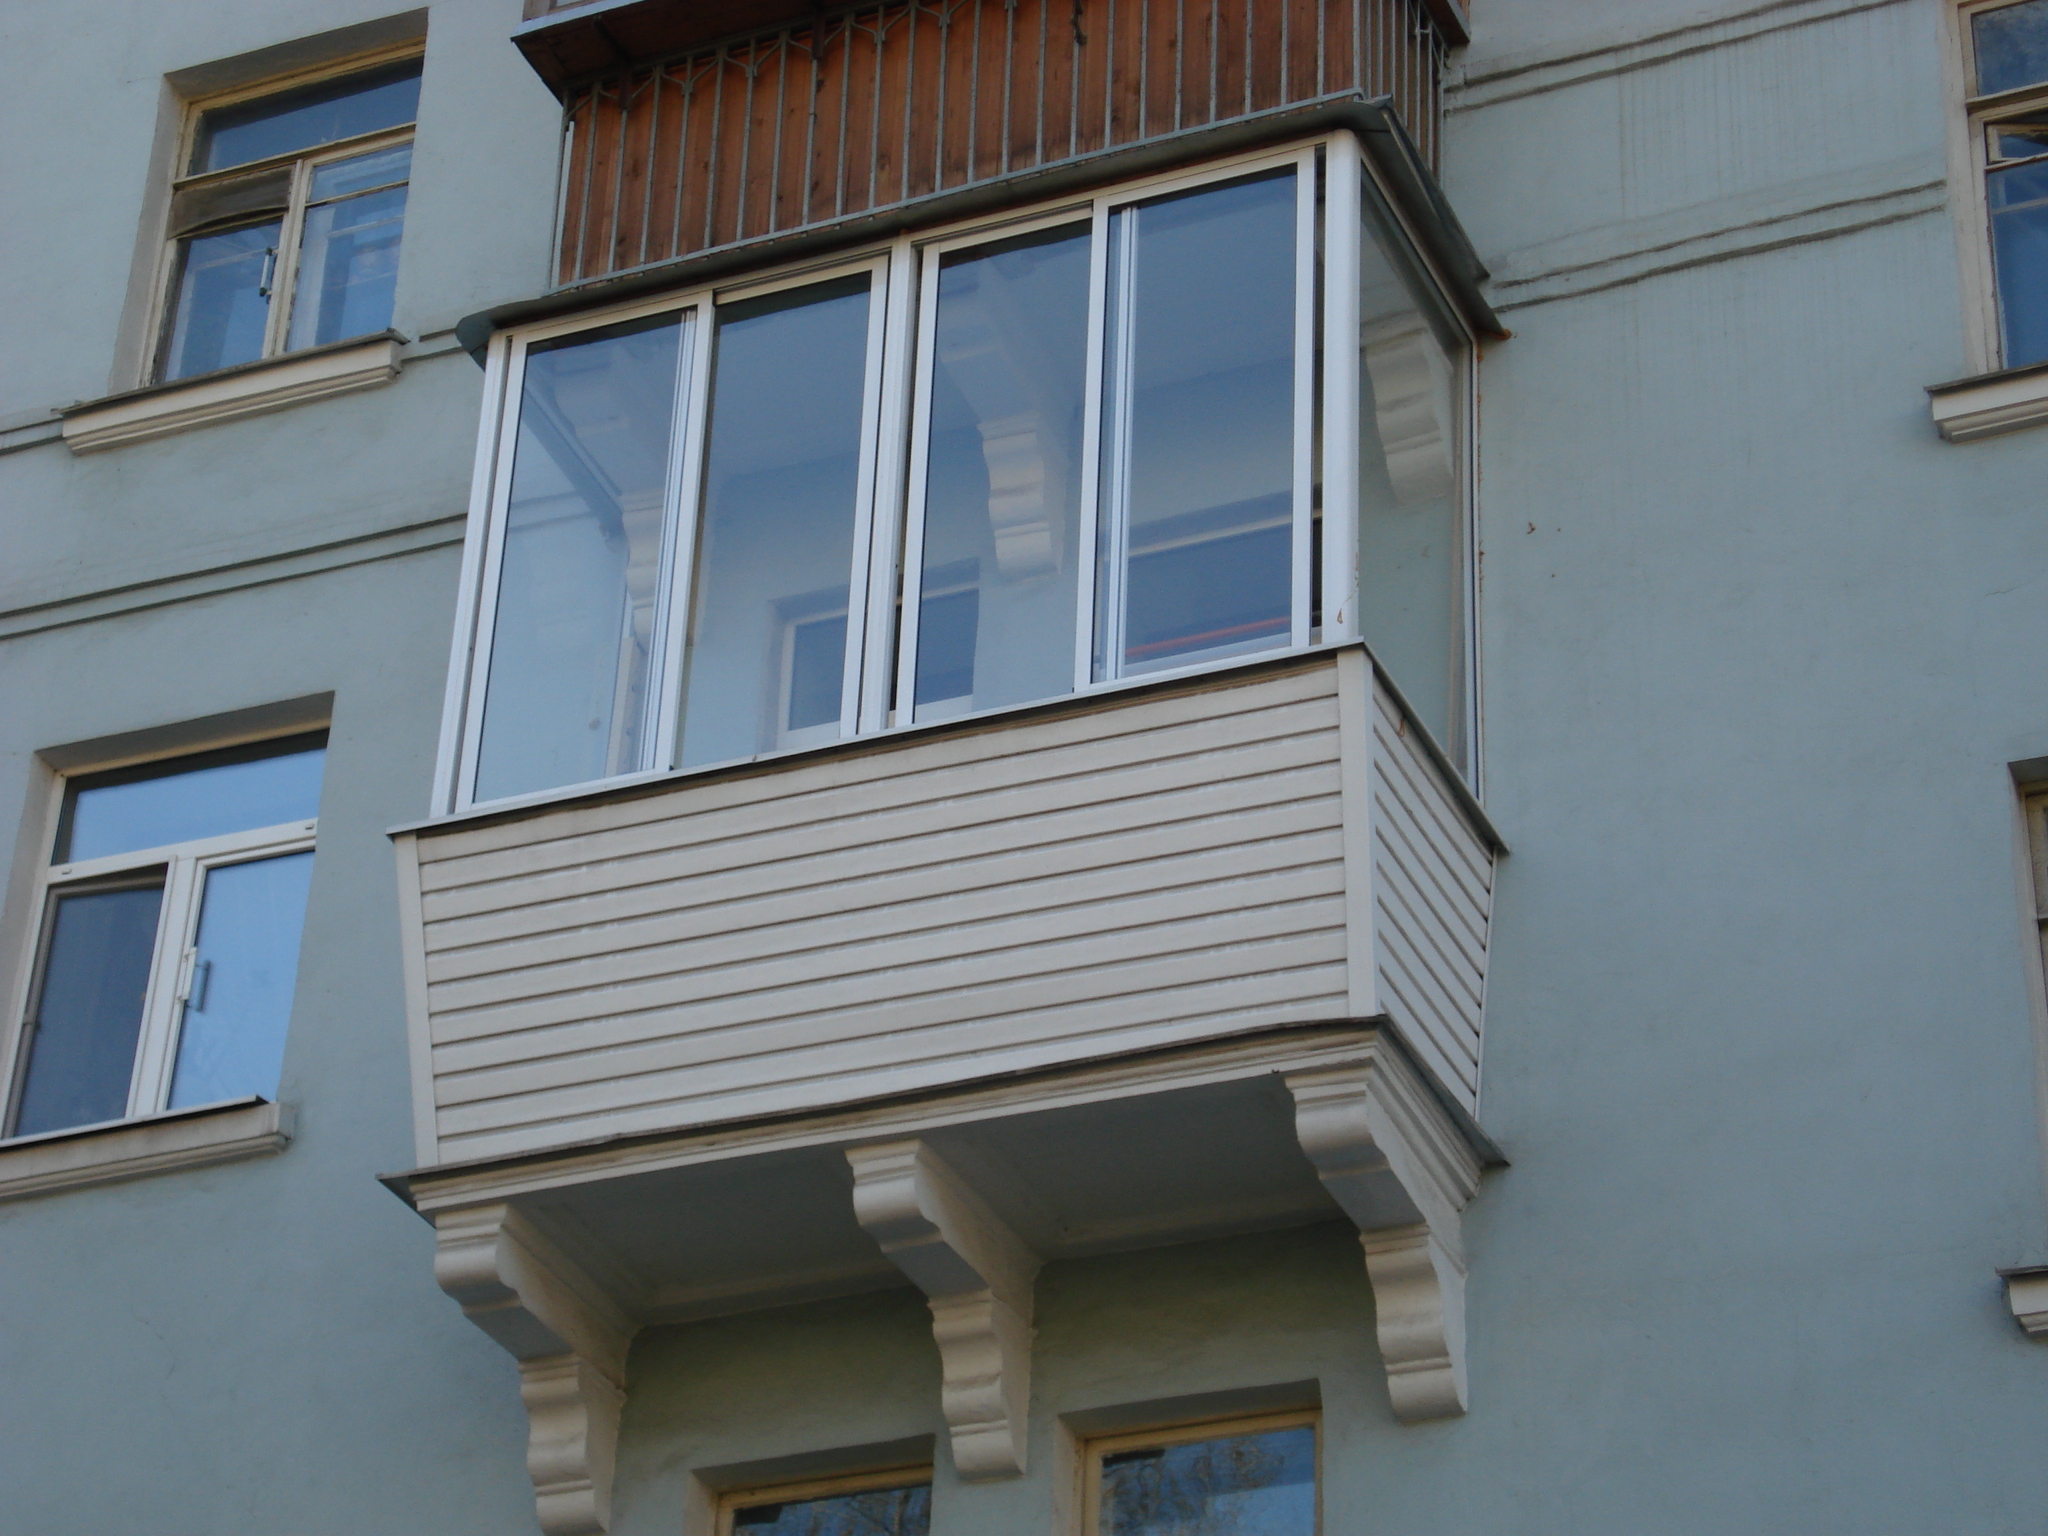 Остекление балконов казань. Остекление балкона в сталинке. Балкон хрущевка остекление. Остекление балконов в хрущевках. Внешняя отделка балкона.